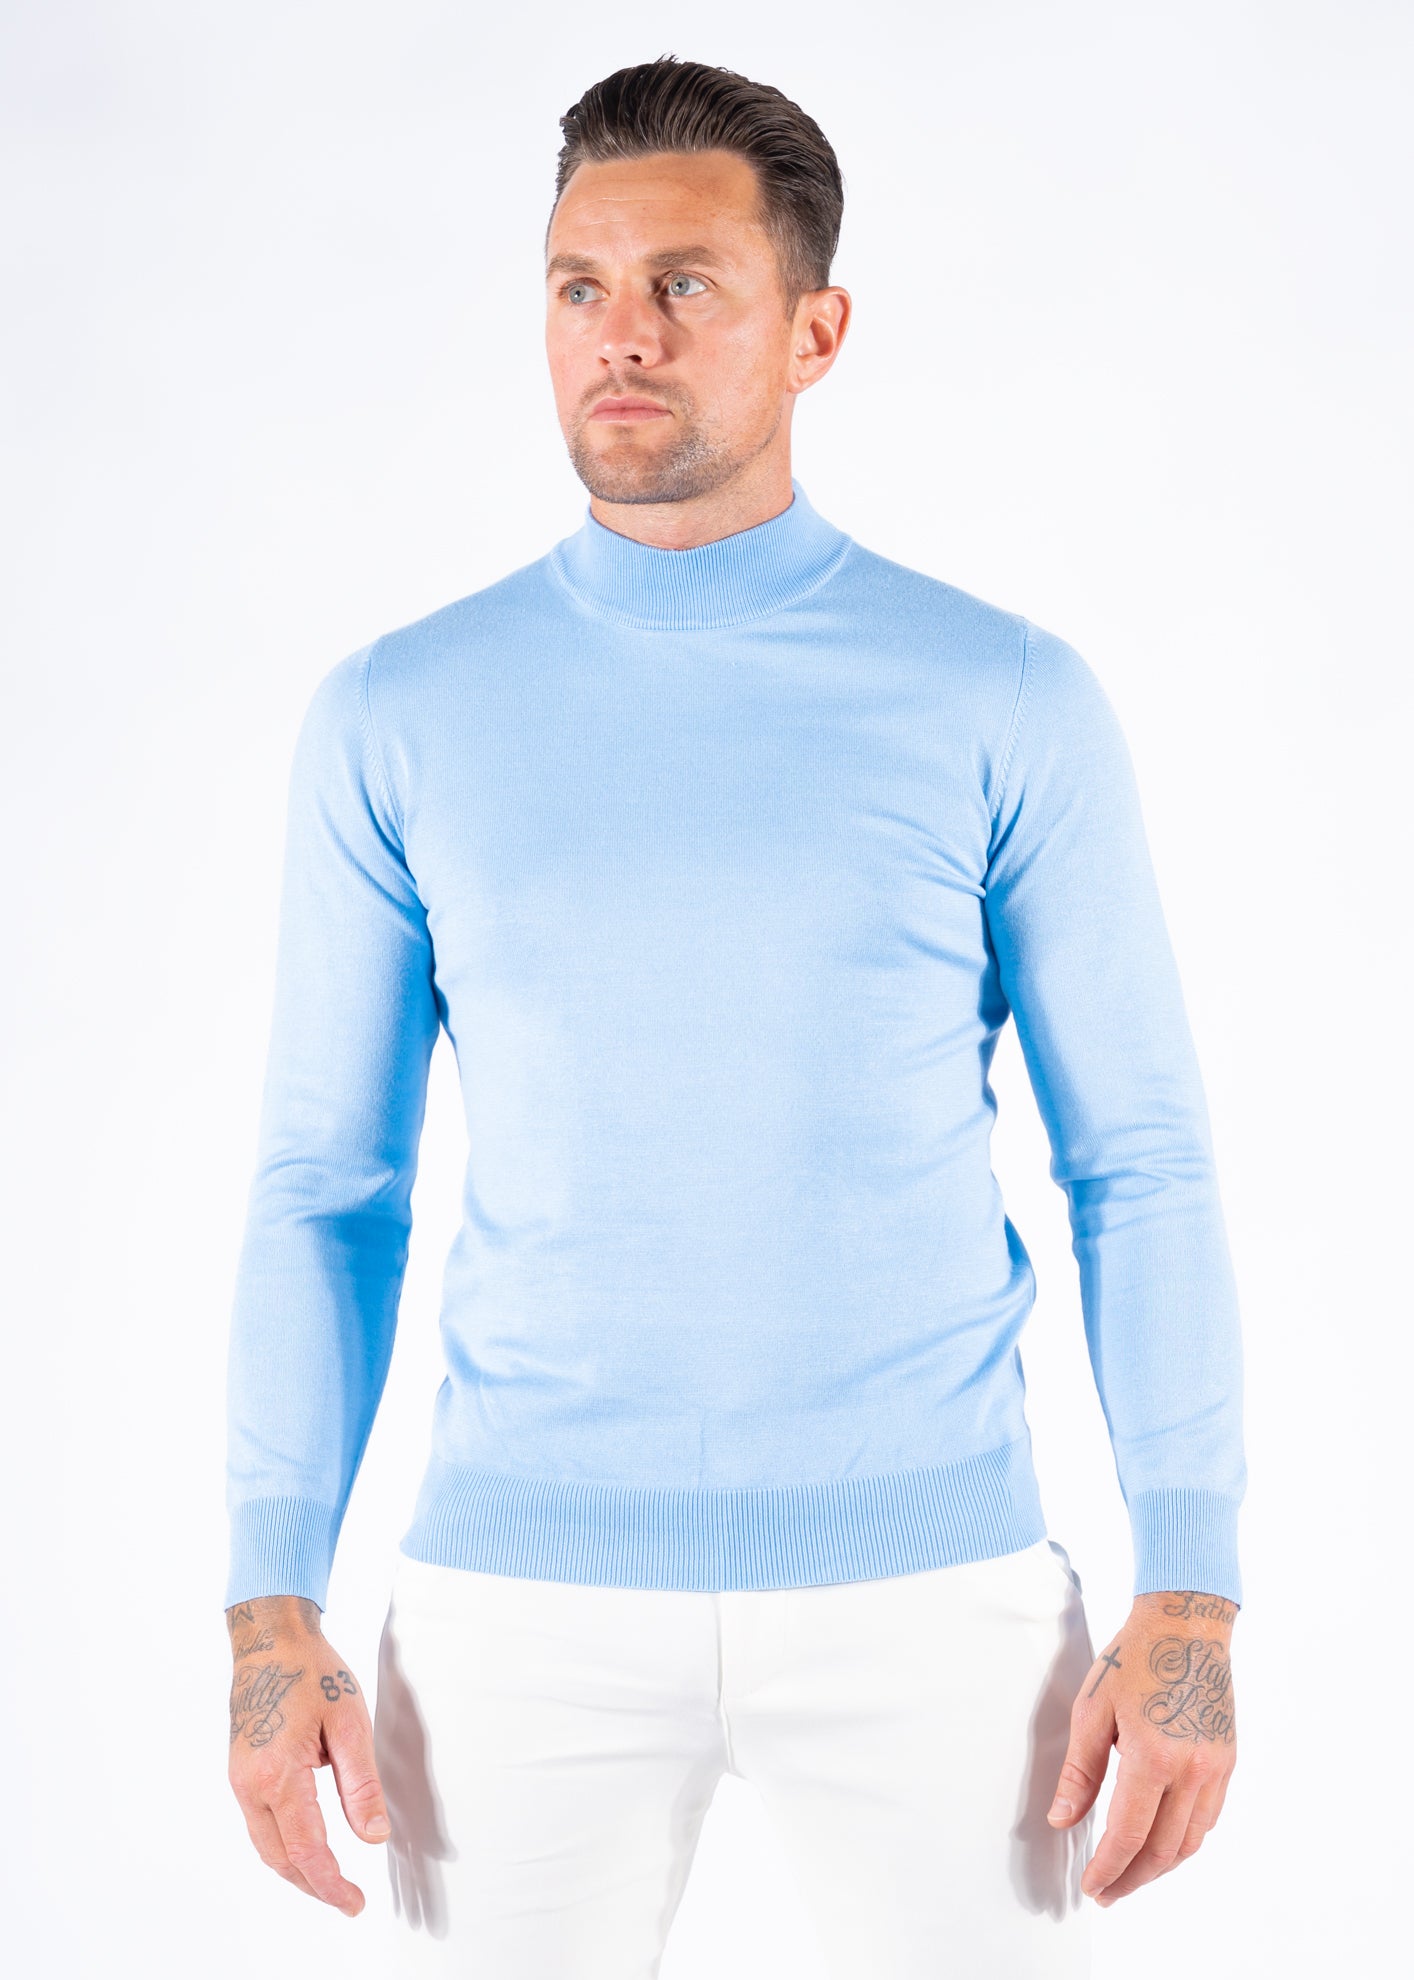 Turtleneck knitwear long sleeve light blue